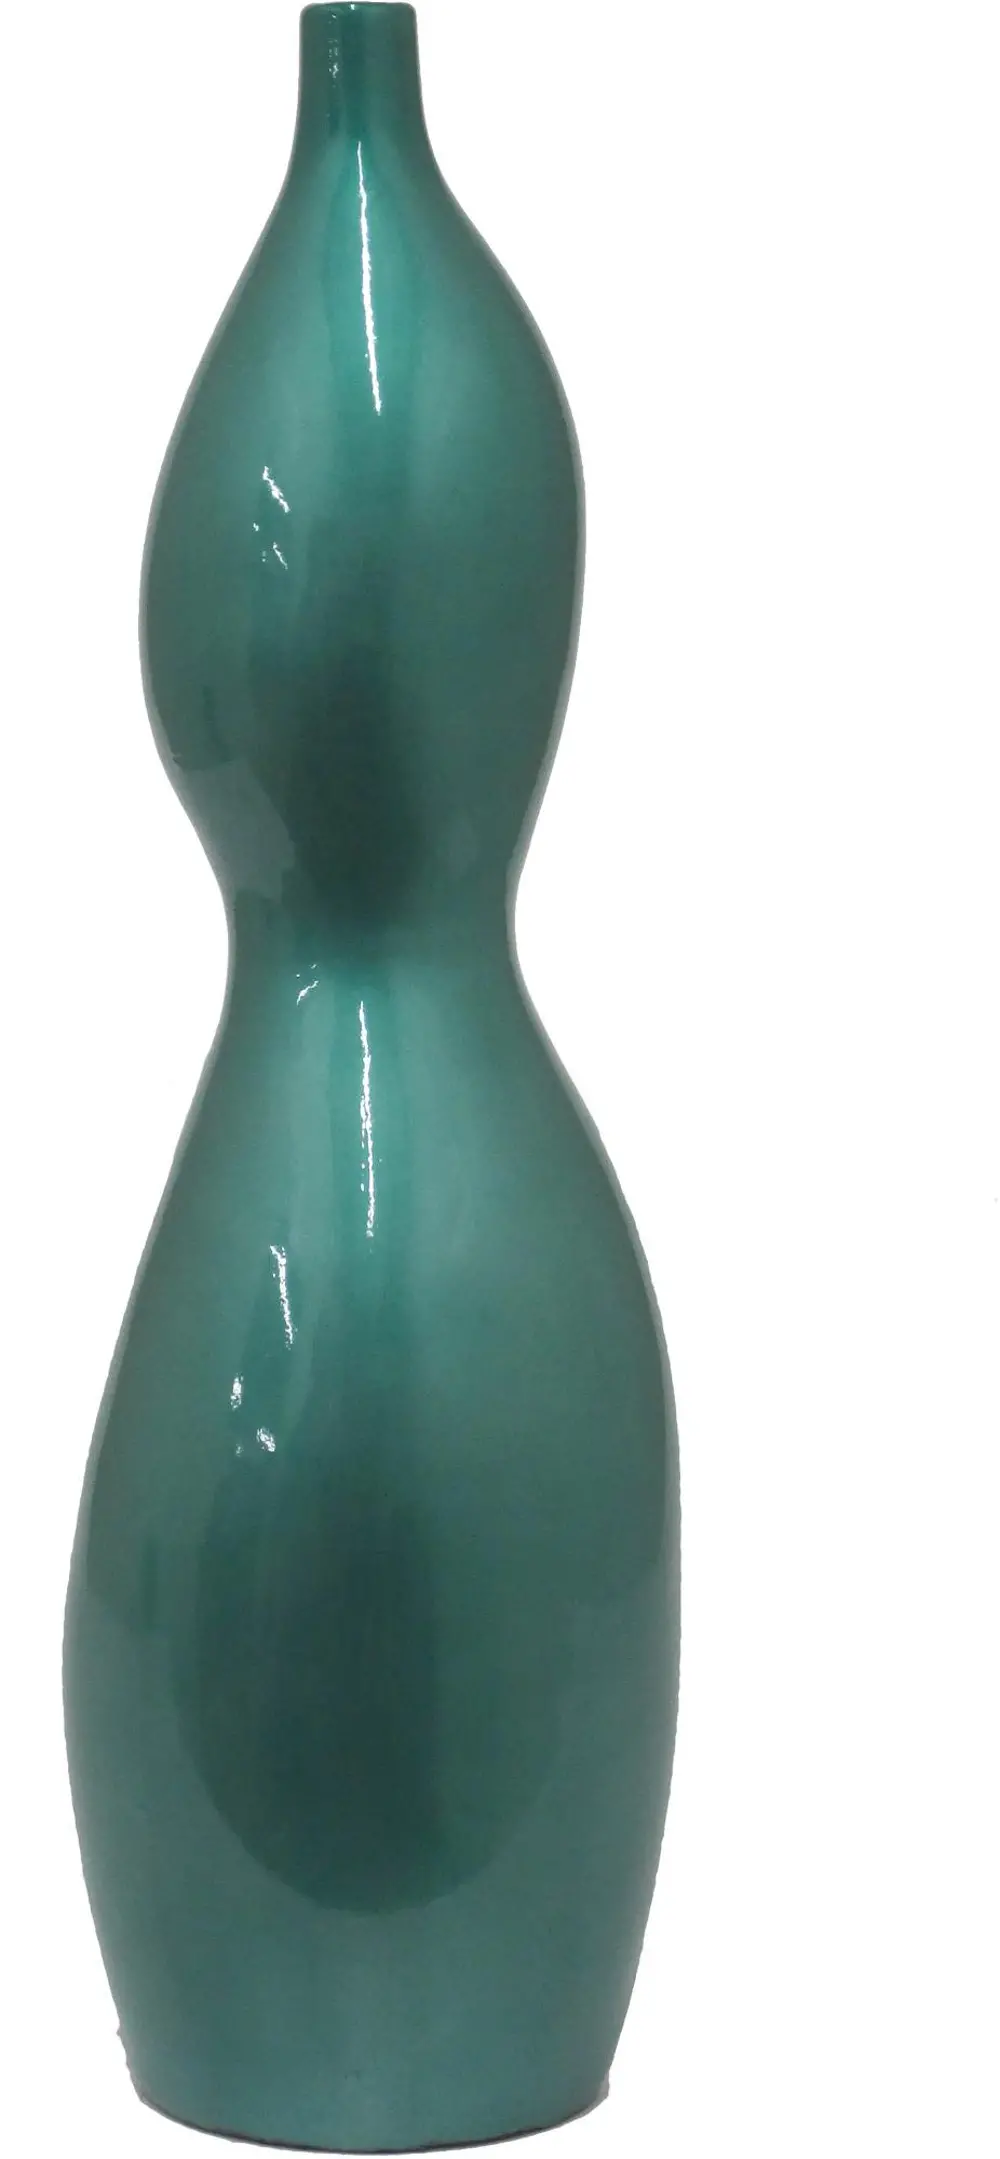 Teal Shaped Ceramic Vase-1